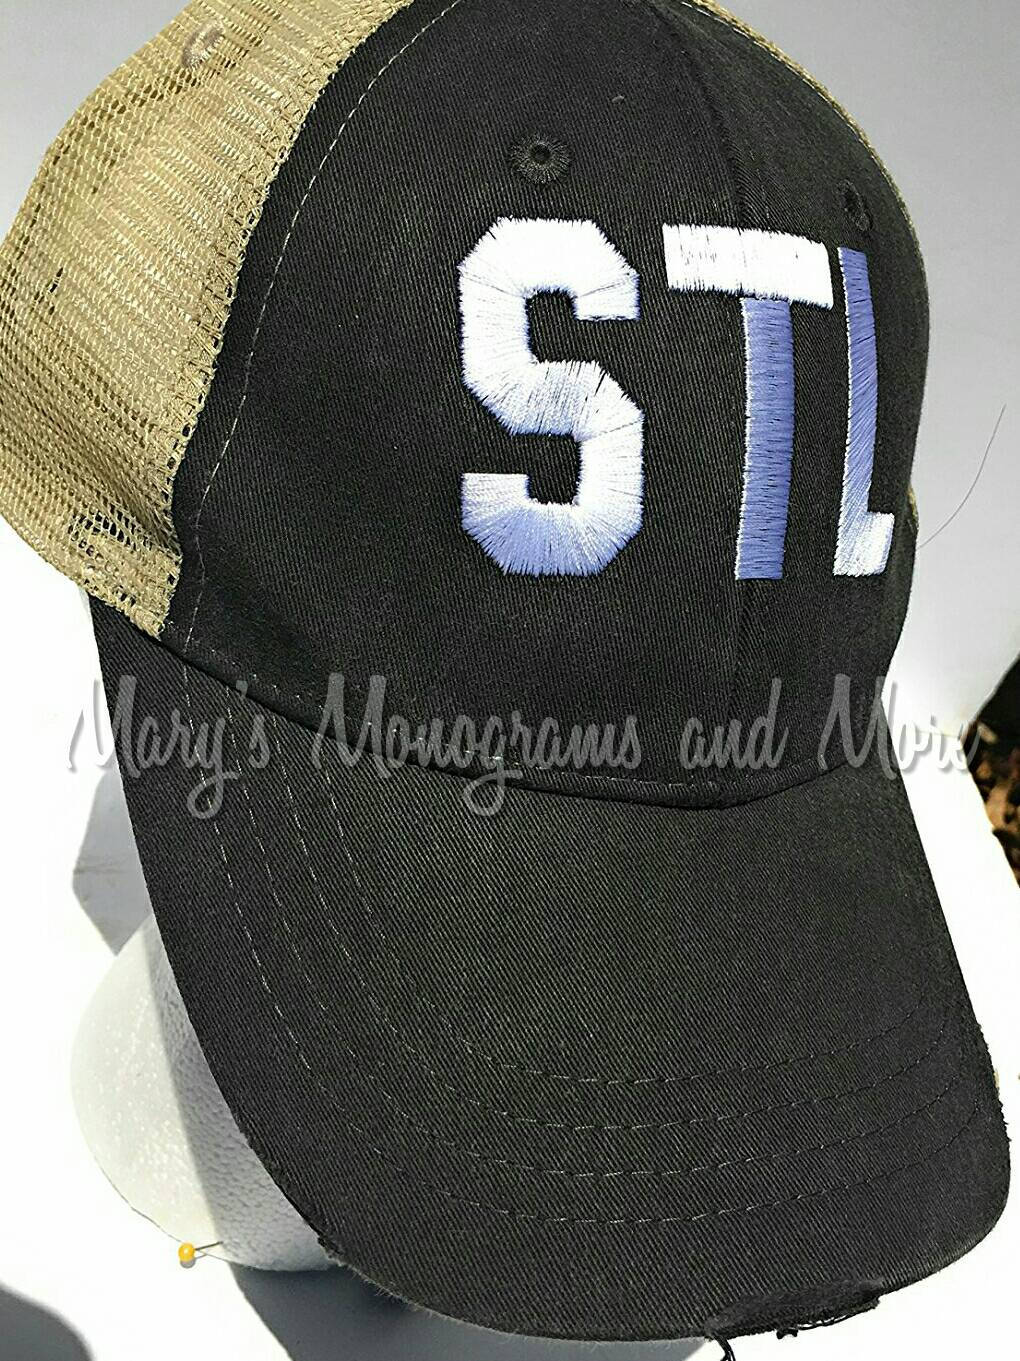 STL Airport Code Trucker Hat